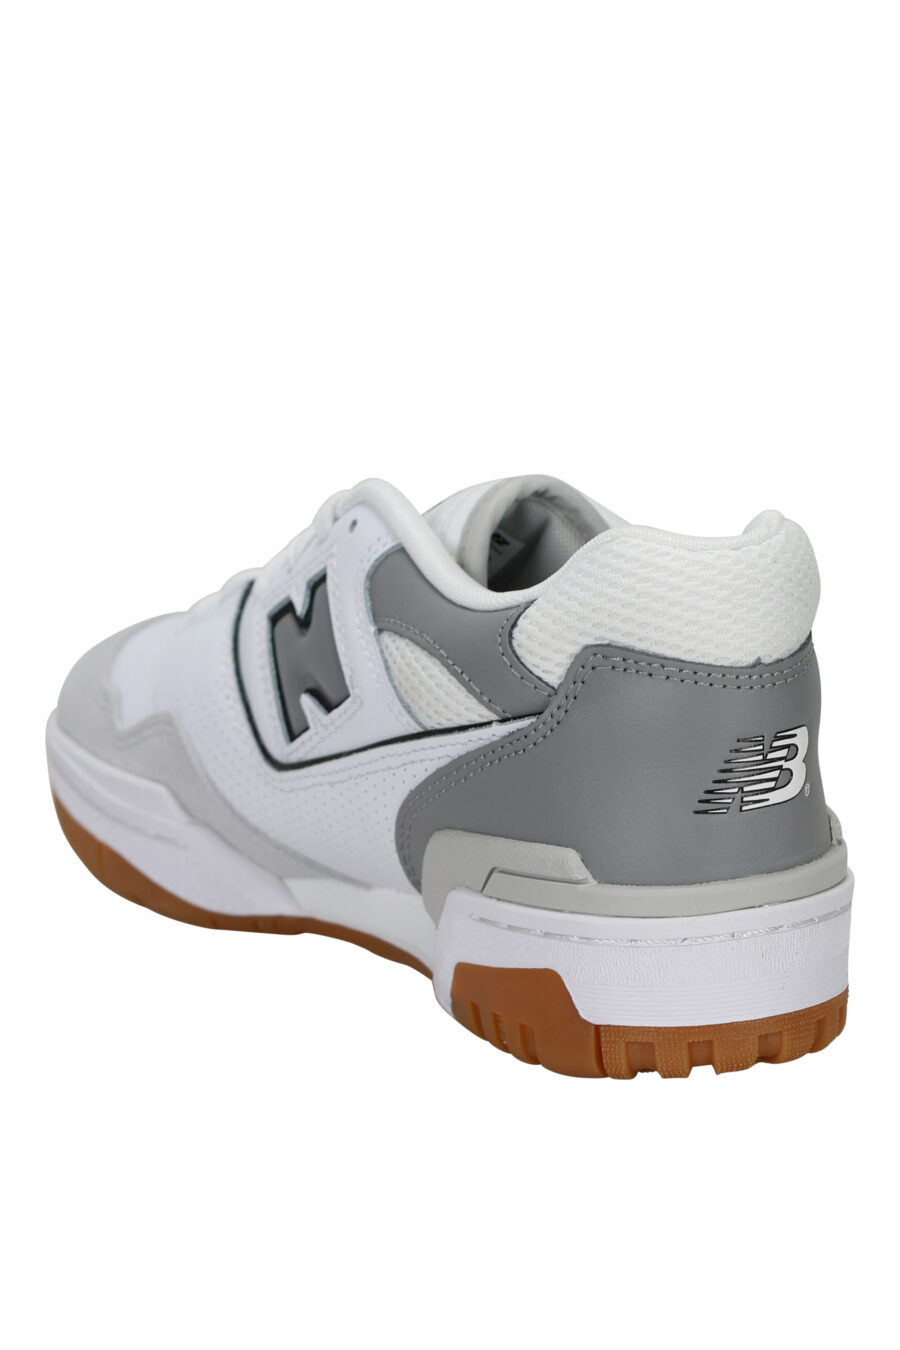 Zapatillas blancas con gris y suela marrón "550" con logo "N" gris - 197375689111 3